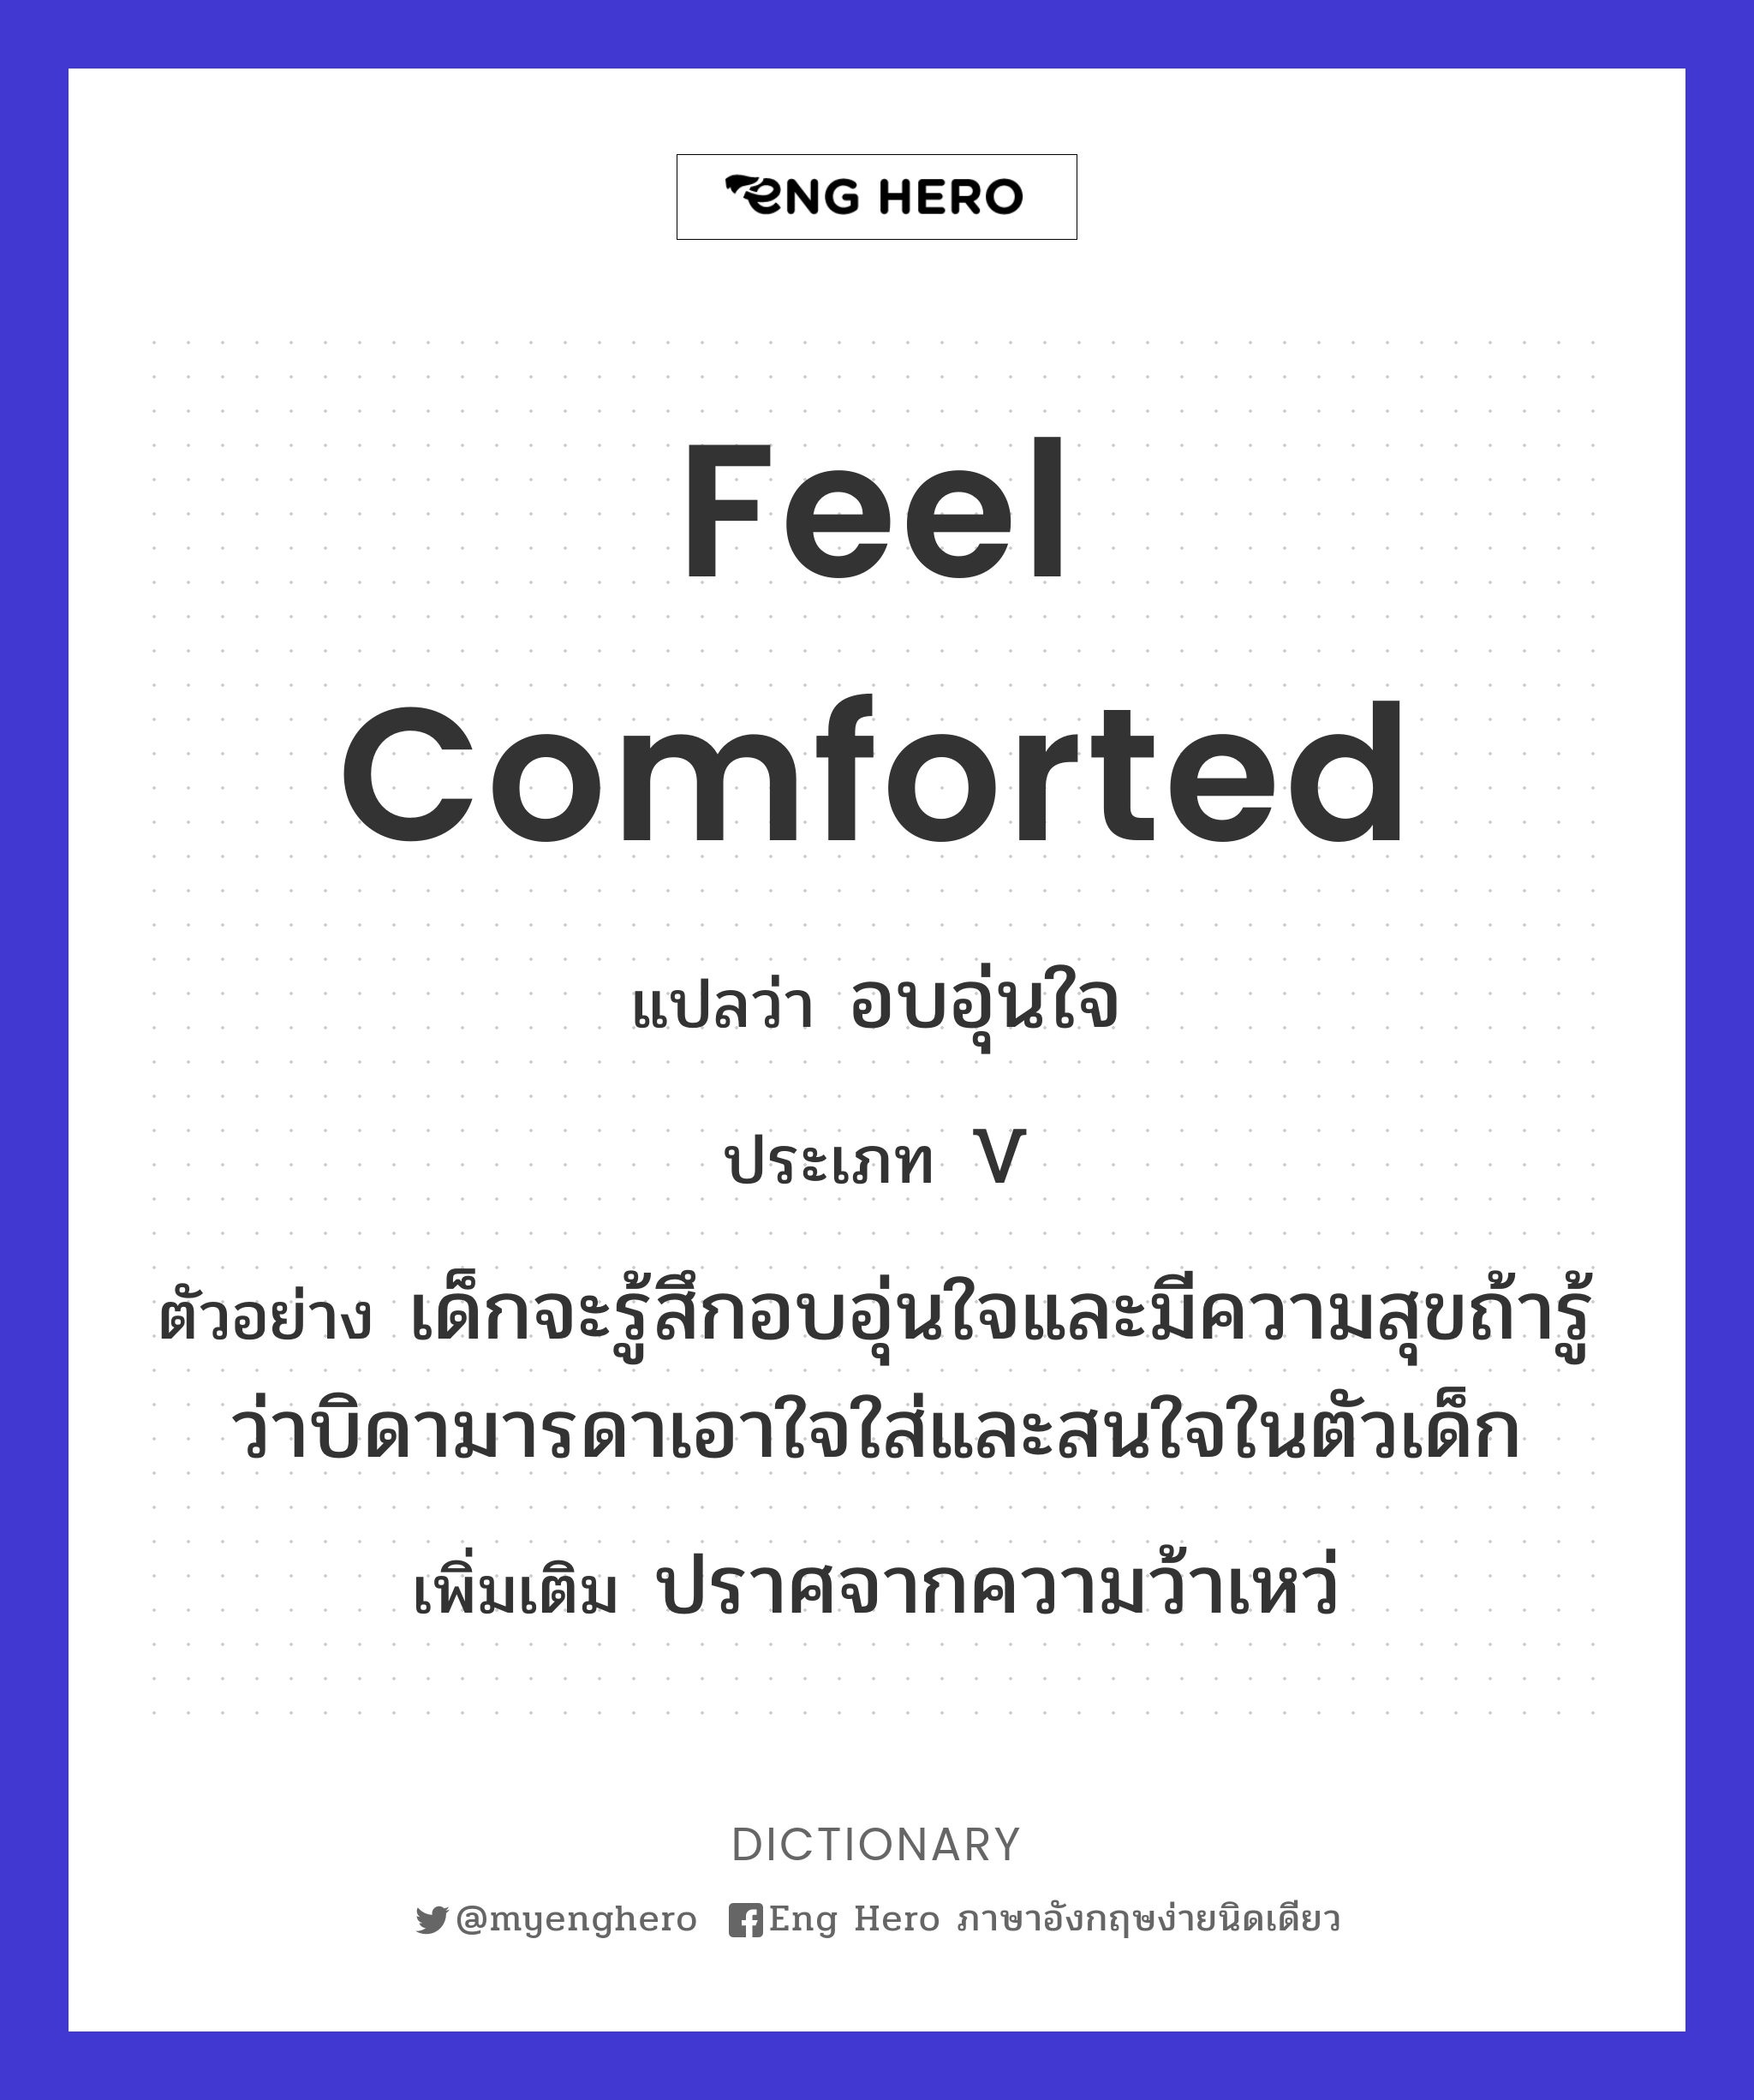 Feel Comforted แปลว่า อบอุ่นใจ | Eng Hero เรียนภาษาอังกฤษ ออนไลน์ ฟรี